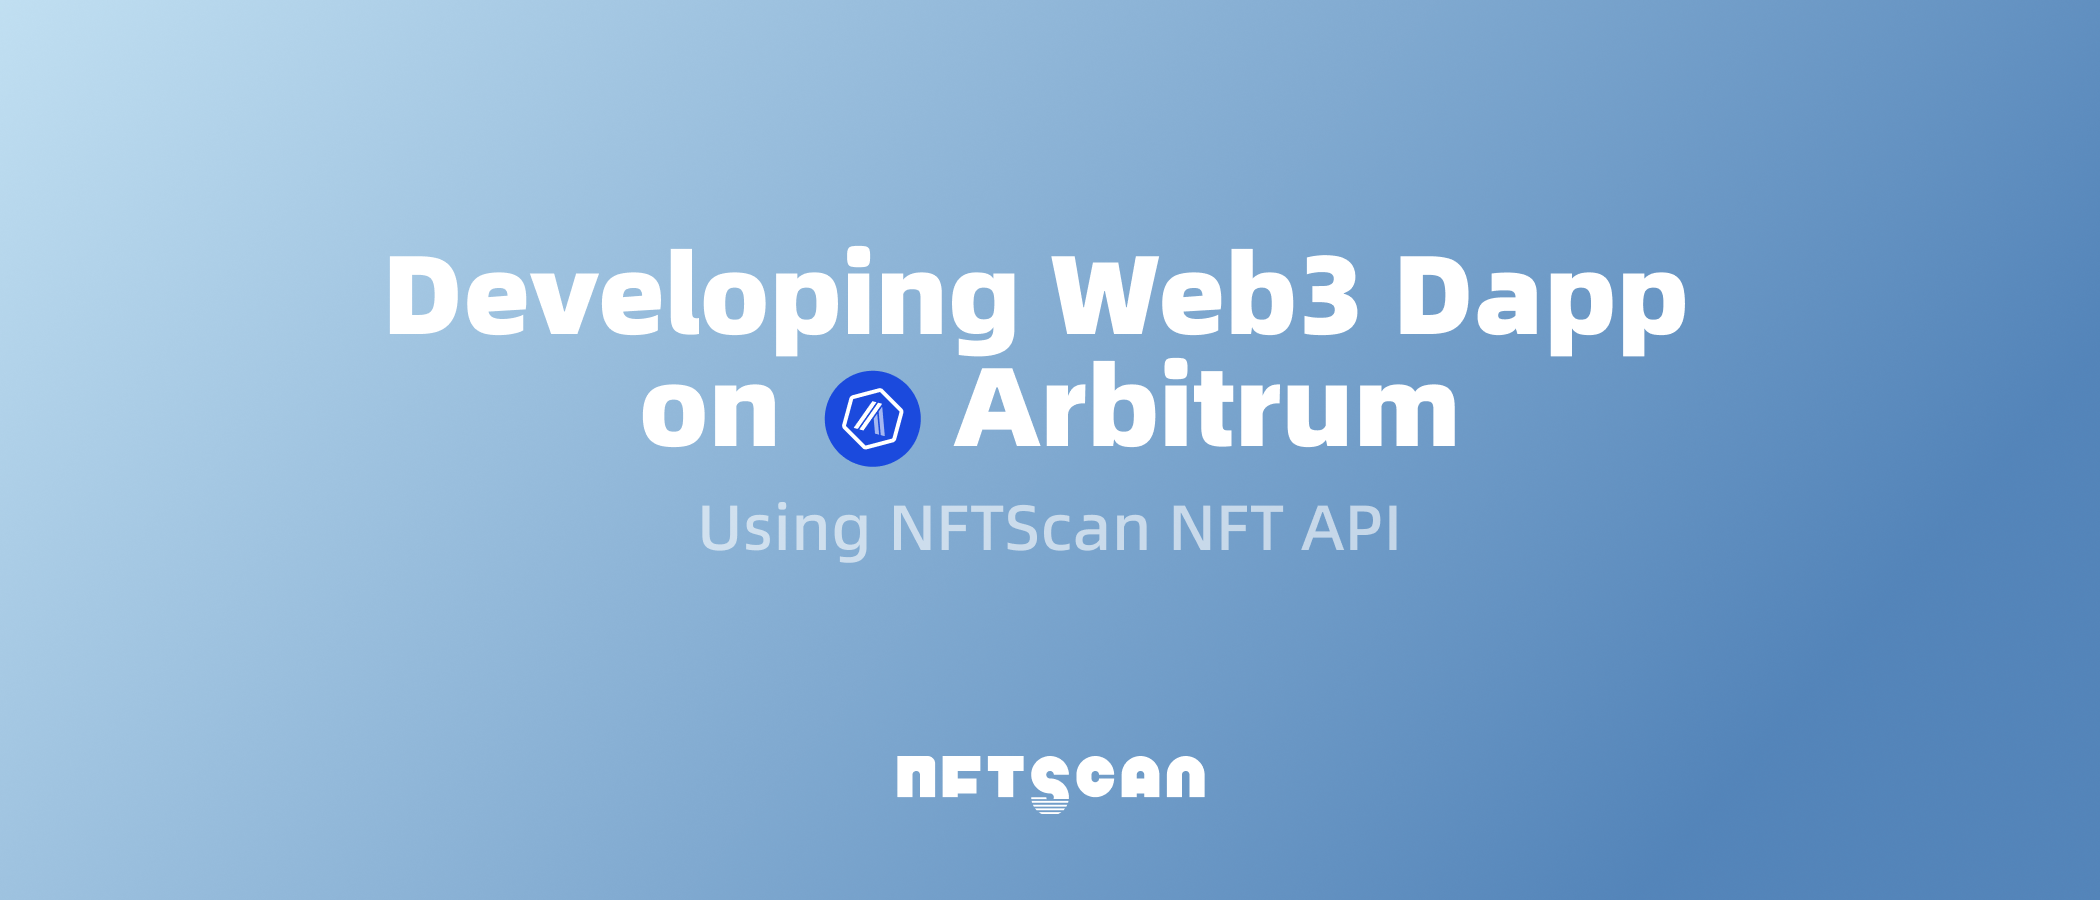 如何使用 NFTScan NFT API 在 Arbitrum 网络上开发 Web3 应用